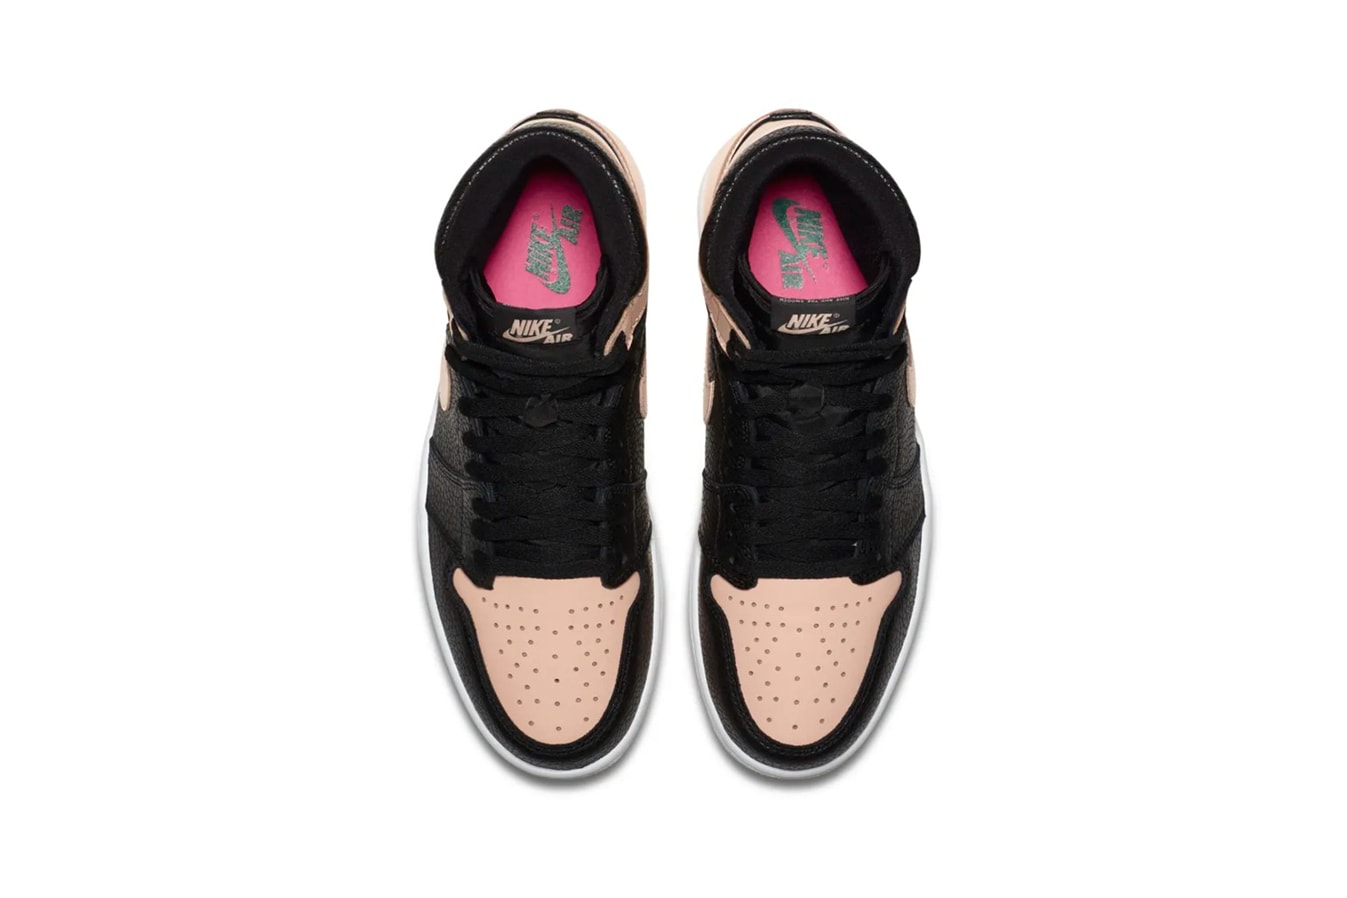 Air Jordan 1 Black Pink